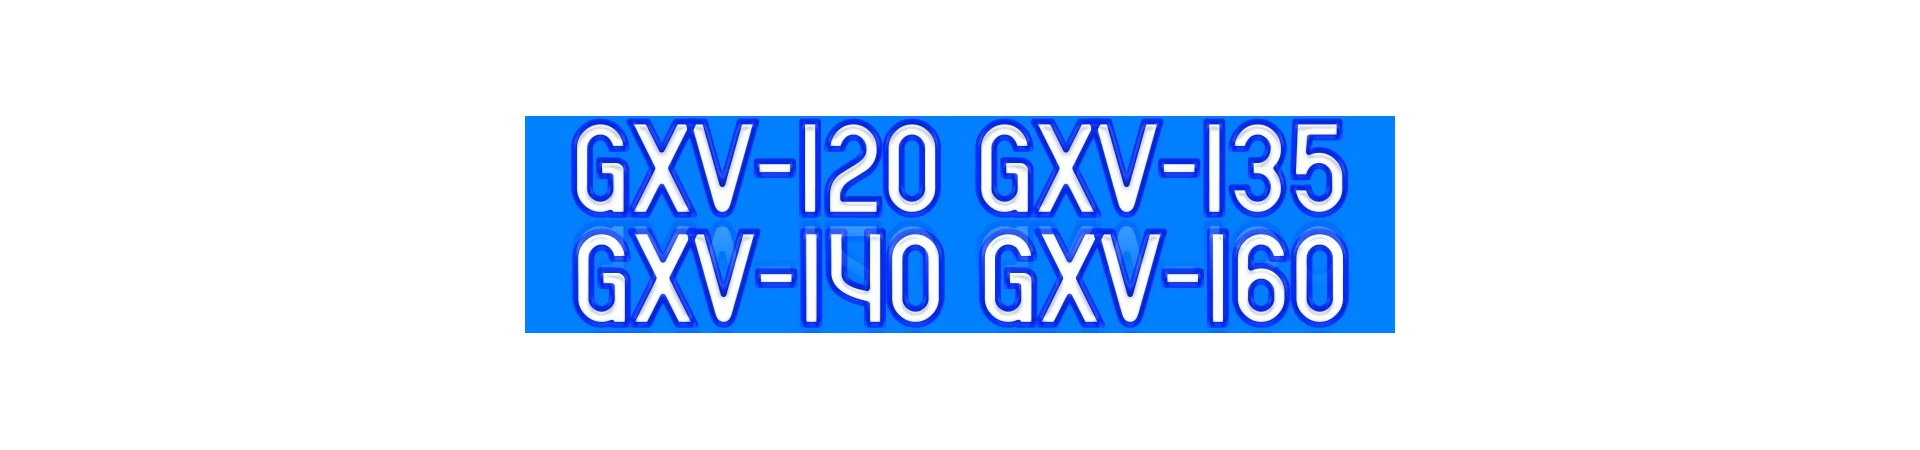 GXV120 GXV135 GXV140 GXV160